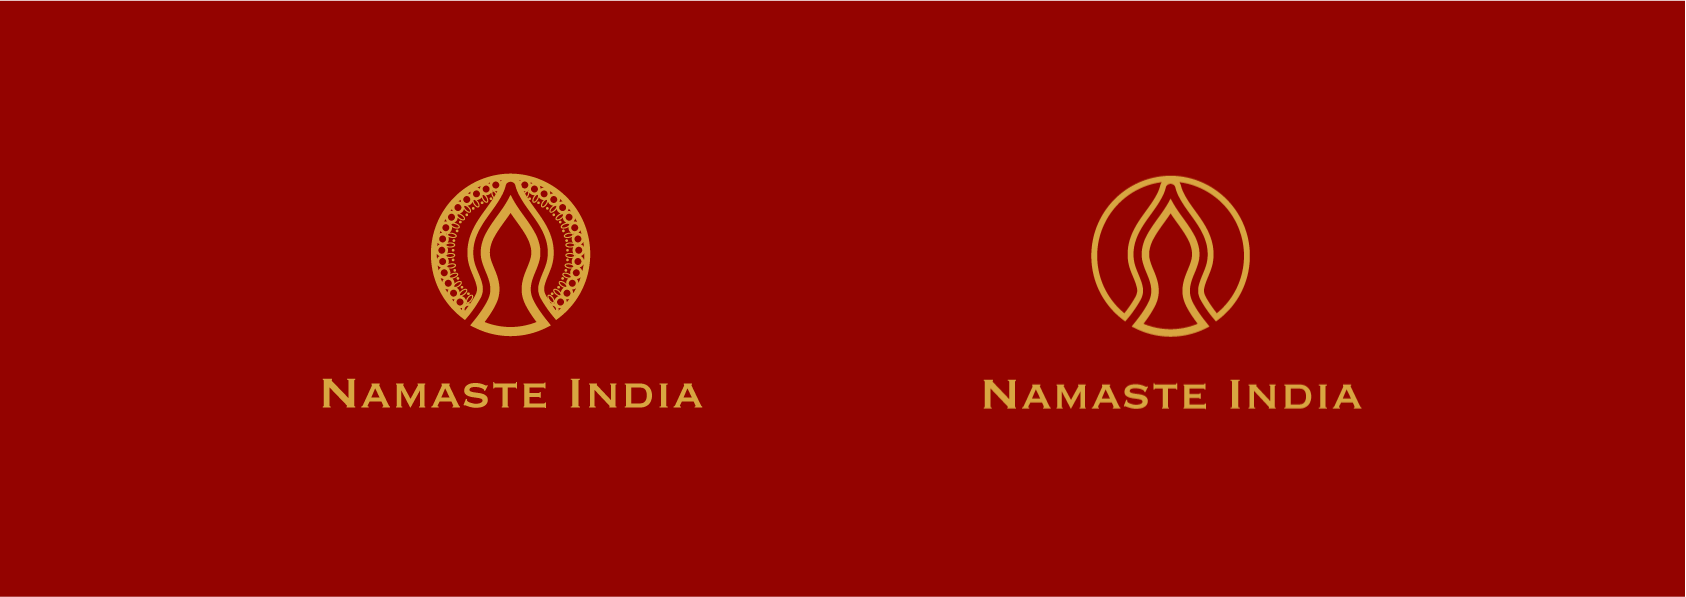 UAF - Namaste India